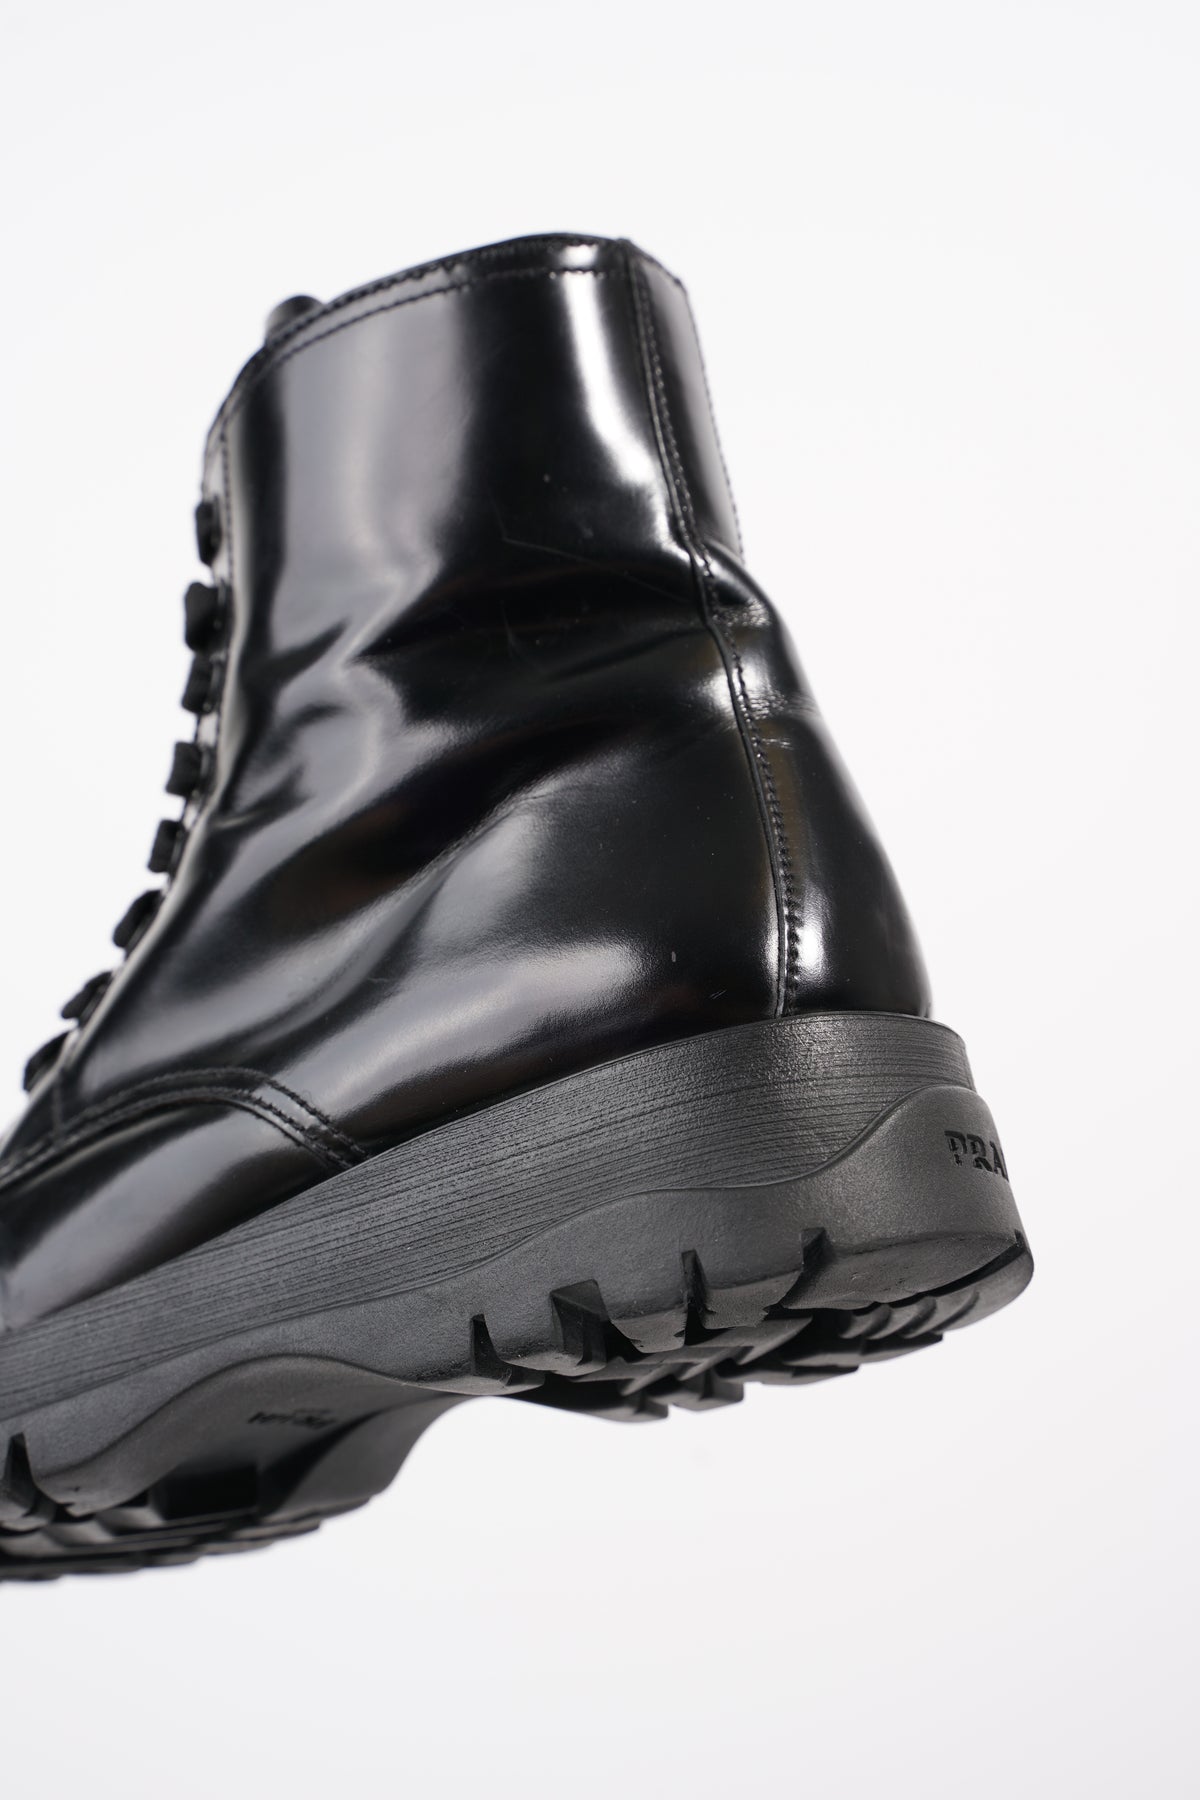 Louis Vuitton Calfskin Monogram Flat Boots 37.5 Black 592419